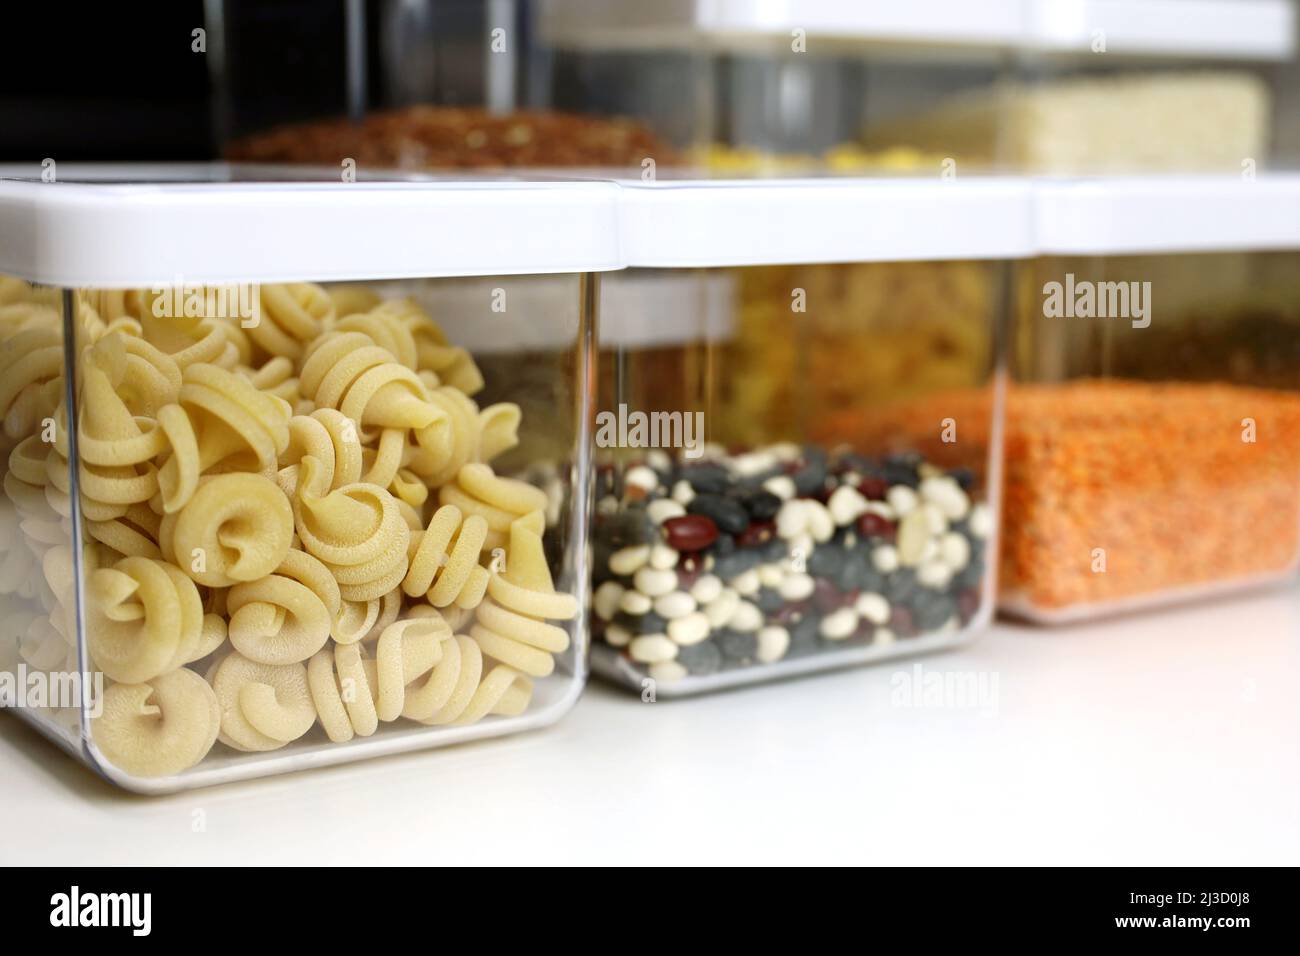 Recipientes transparentes llenos de pasta, legumbres y cereales en el estante de la cocina. Organización del almacenamiento de alimentos a granel Foto de stock